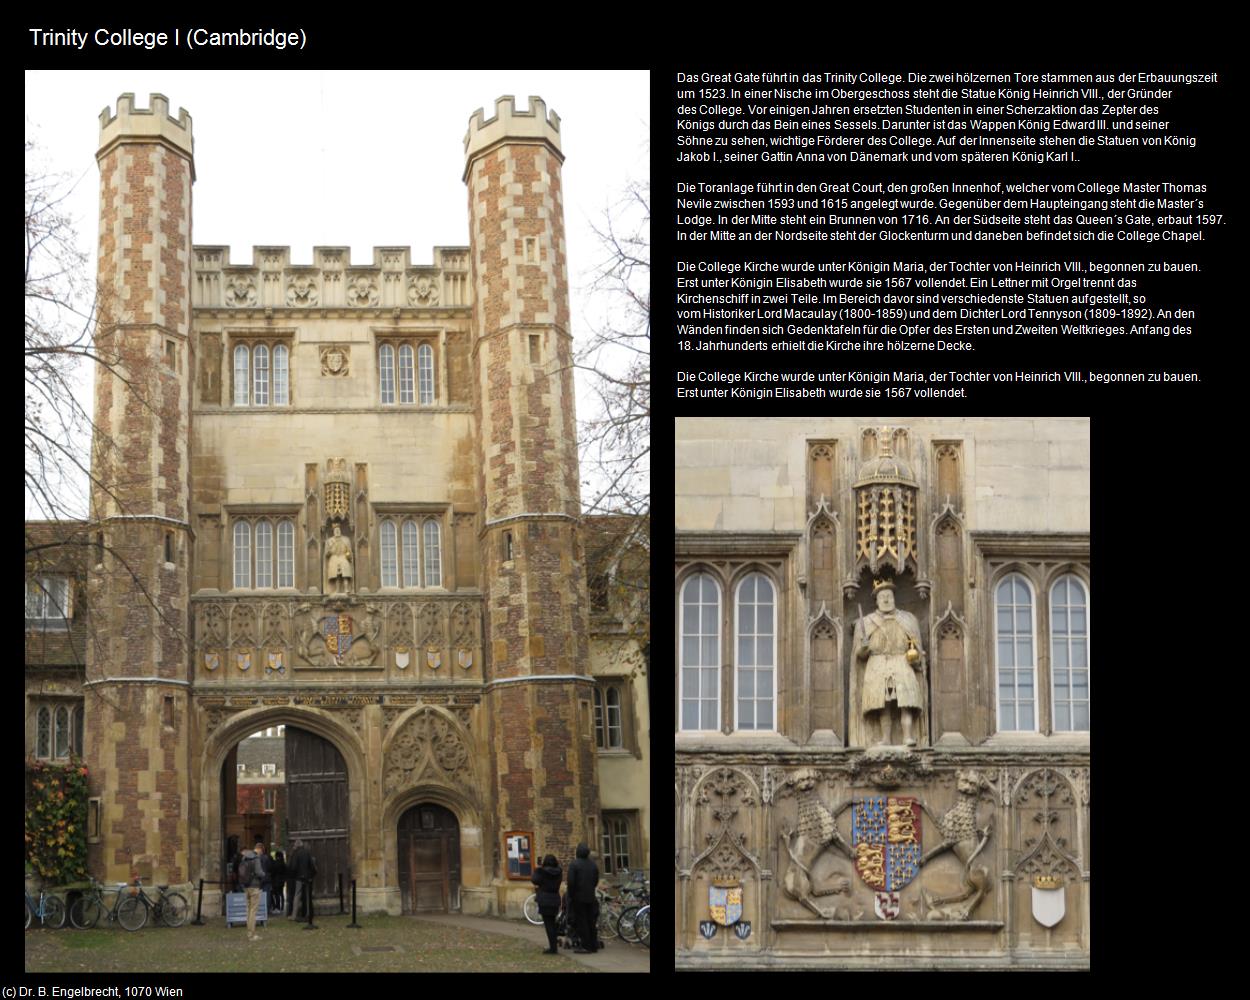 Trinity College I (Cambridge, England) in Kulturatlas-ENGLAND und WALES